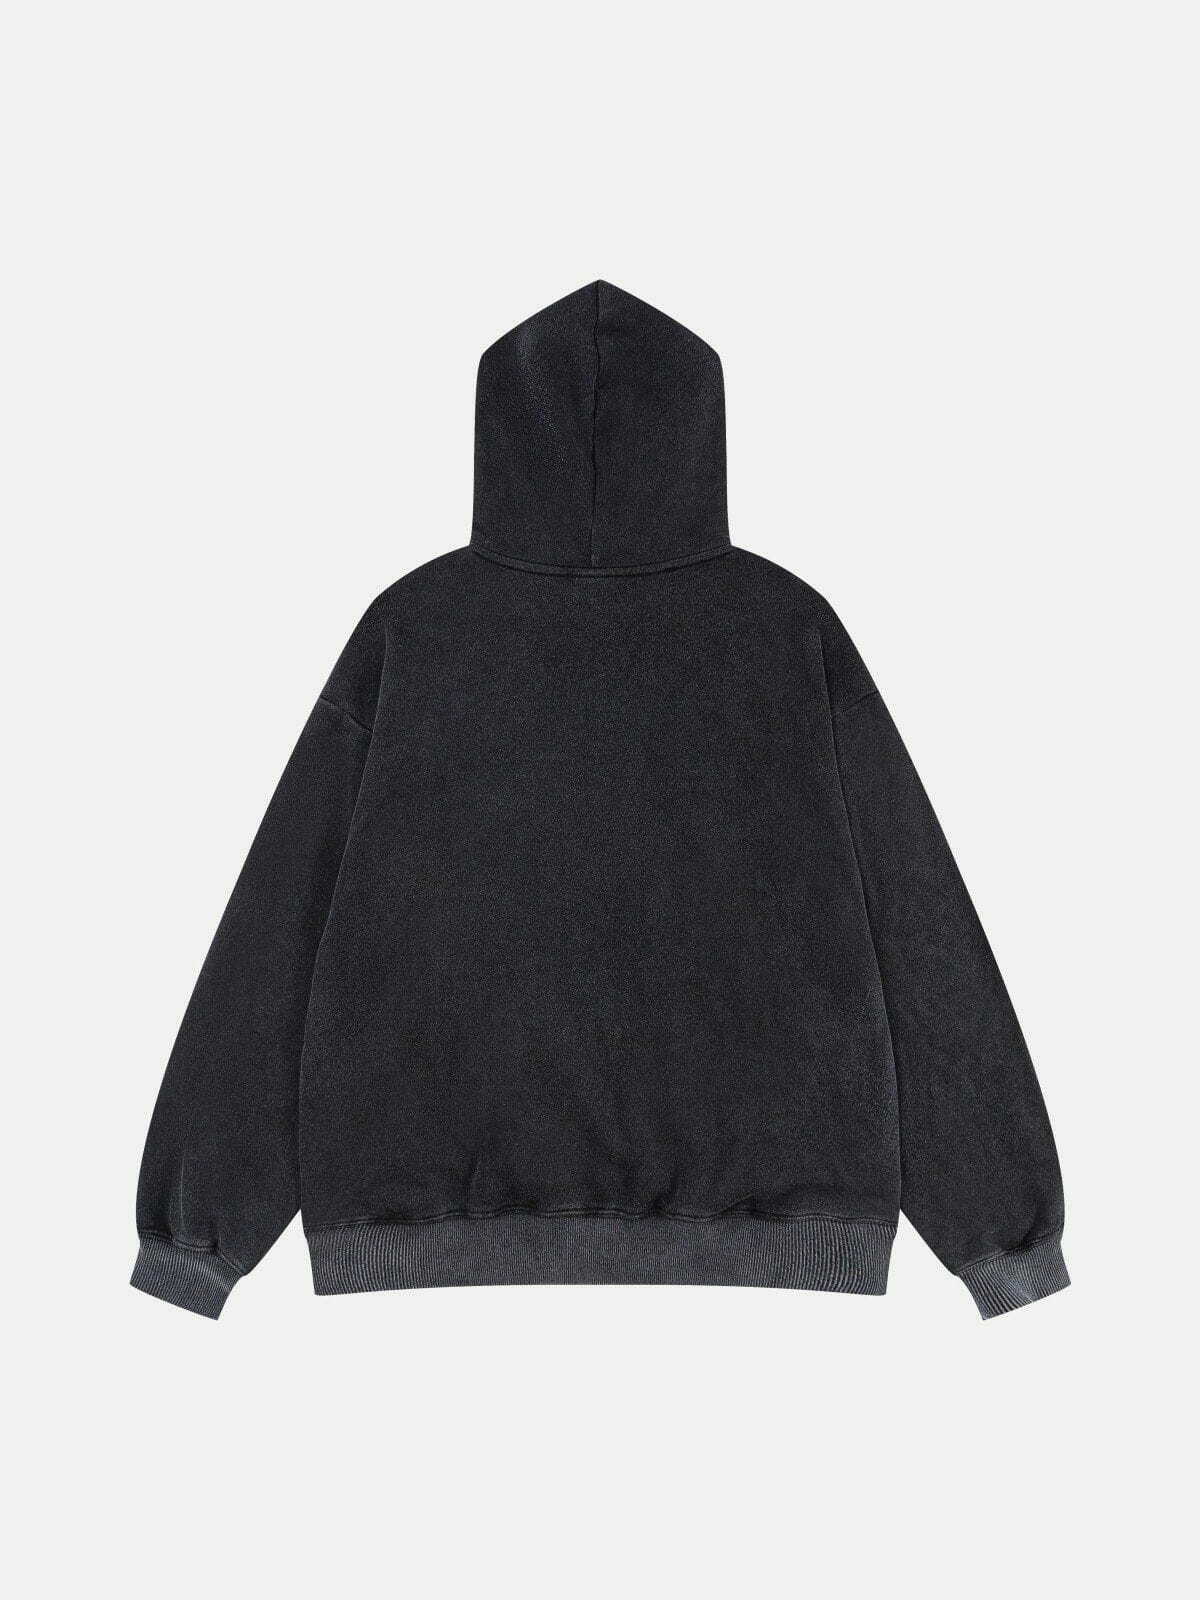 earth apple print hoodie vibrant & eclectic streetwear 1281